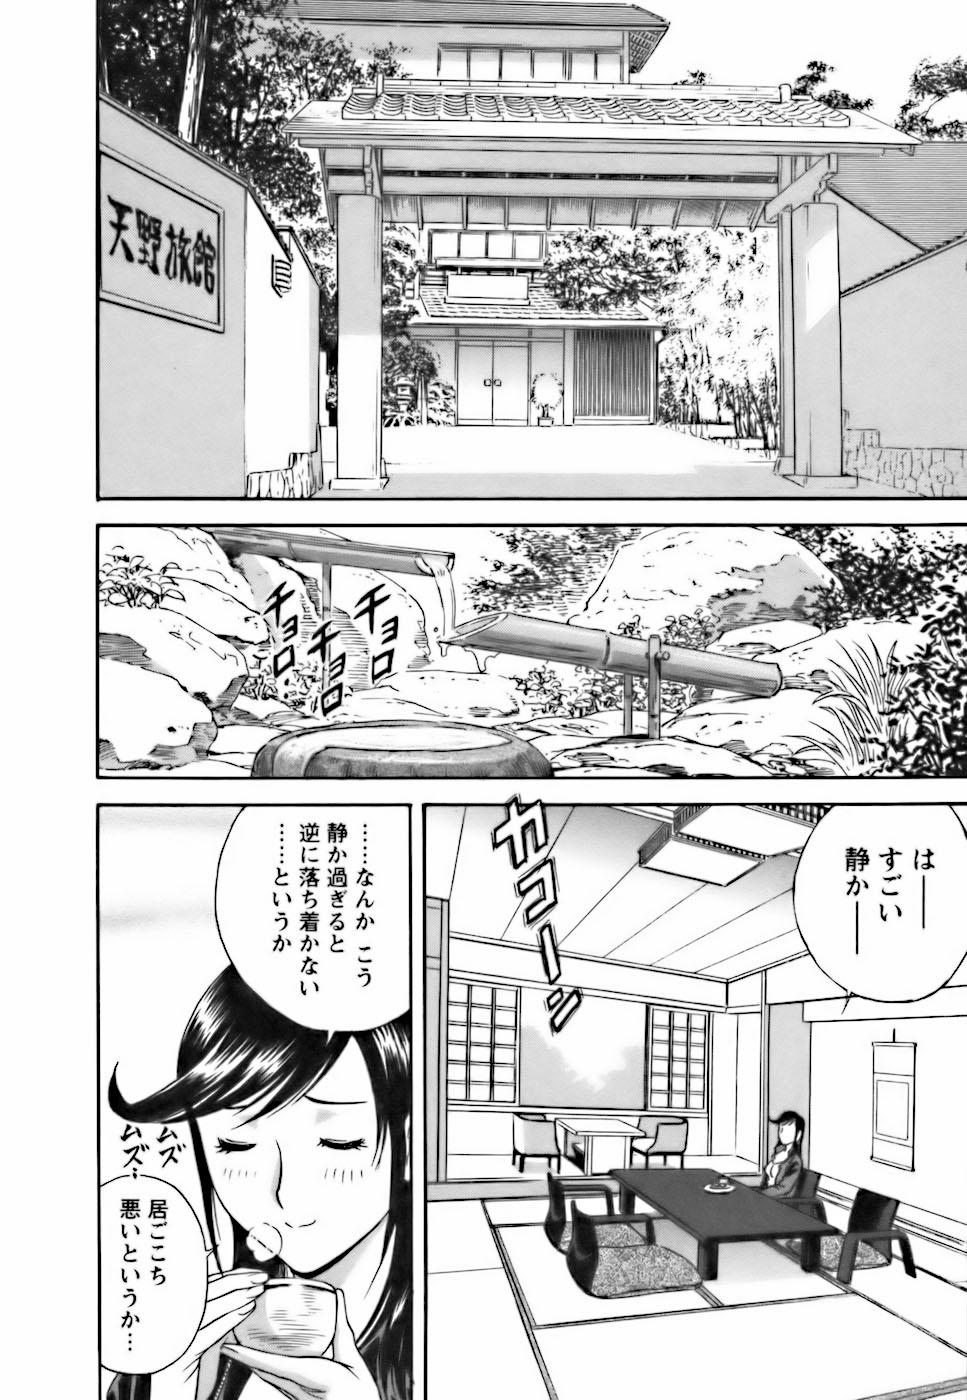 [Hidemaru] Mo-Retsu! Boin Sensei (Boing Boing Teacher) Vol.3 129